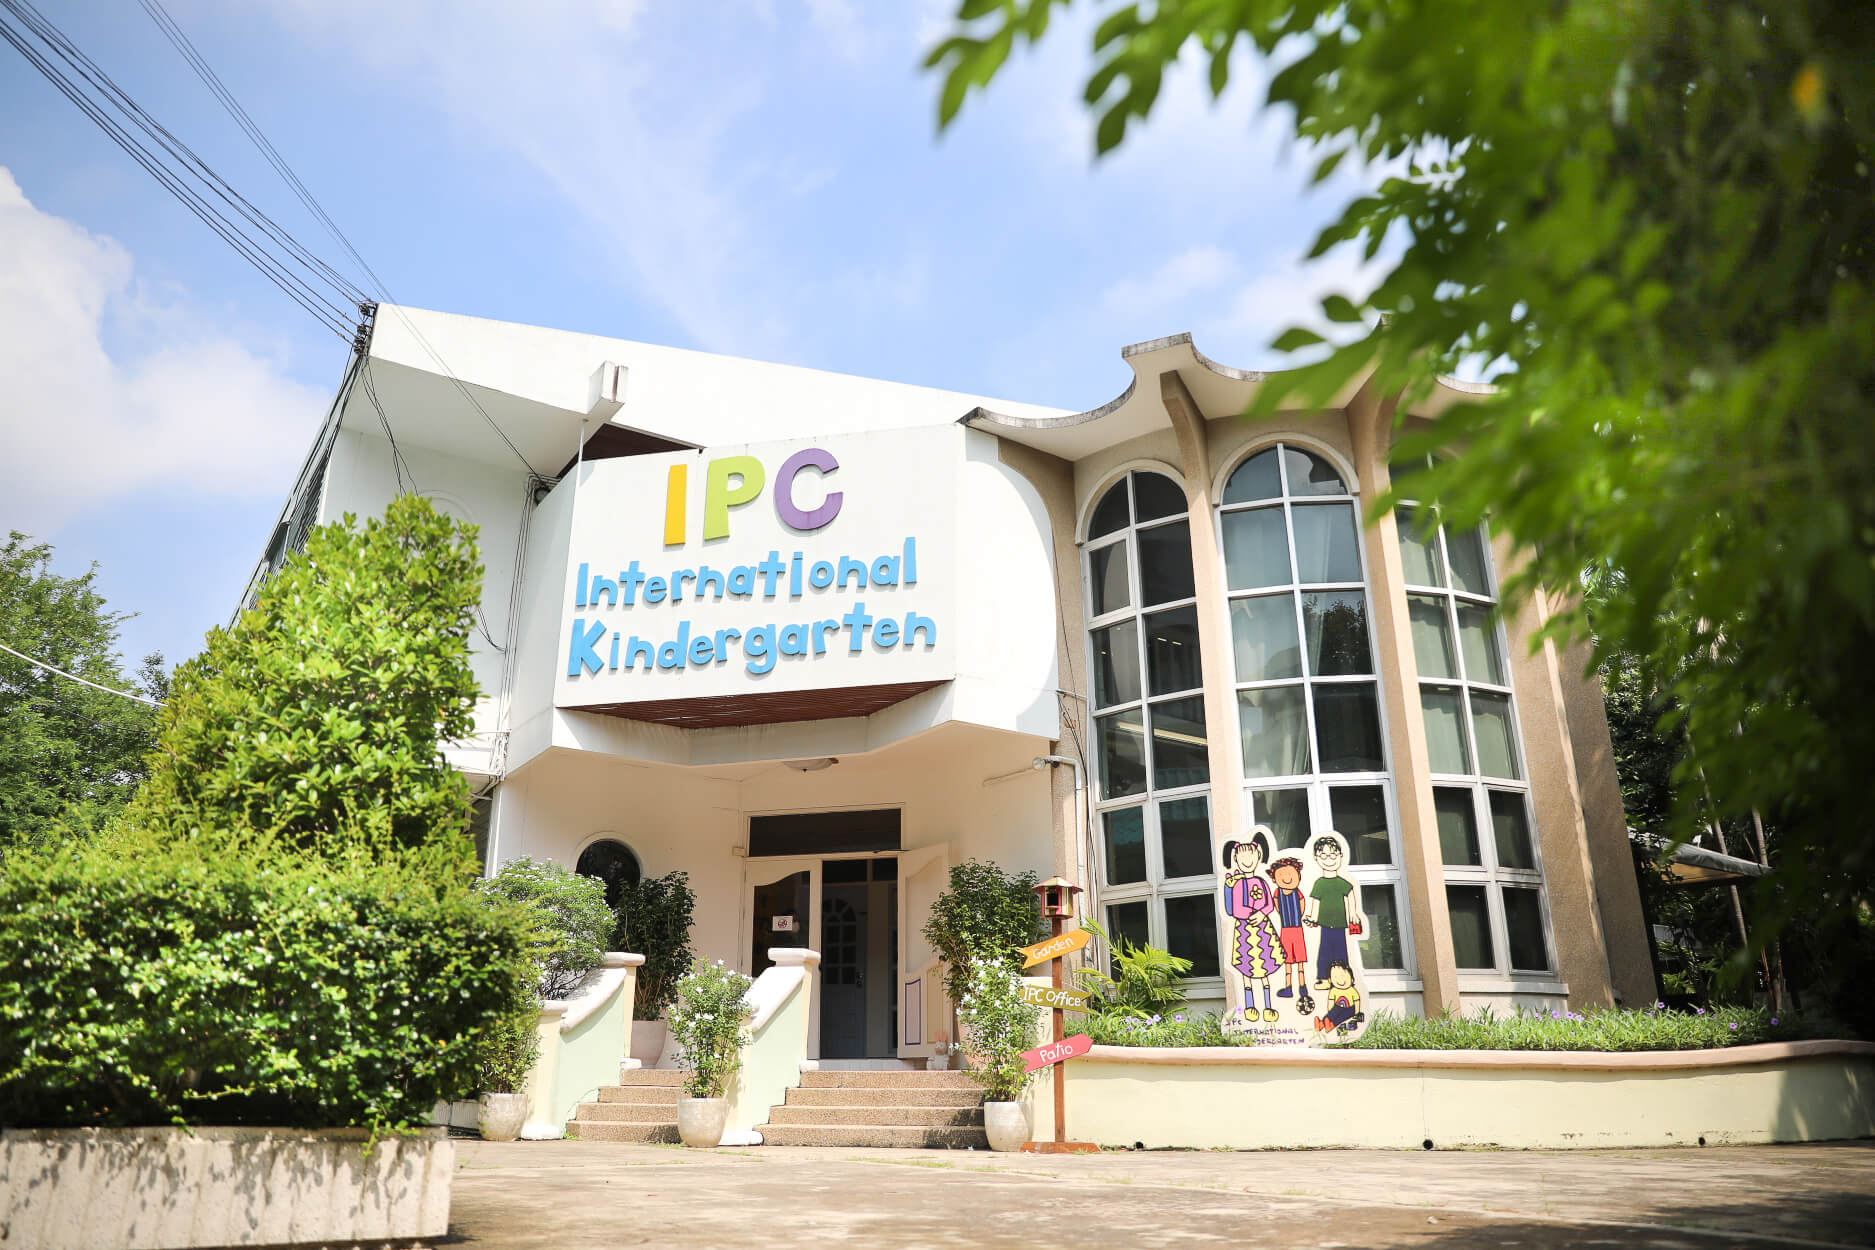 Overview of IPC school